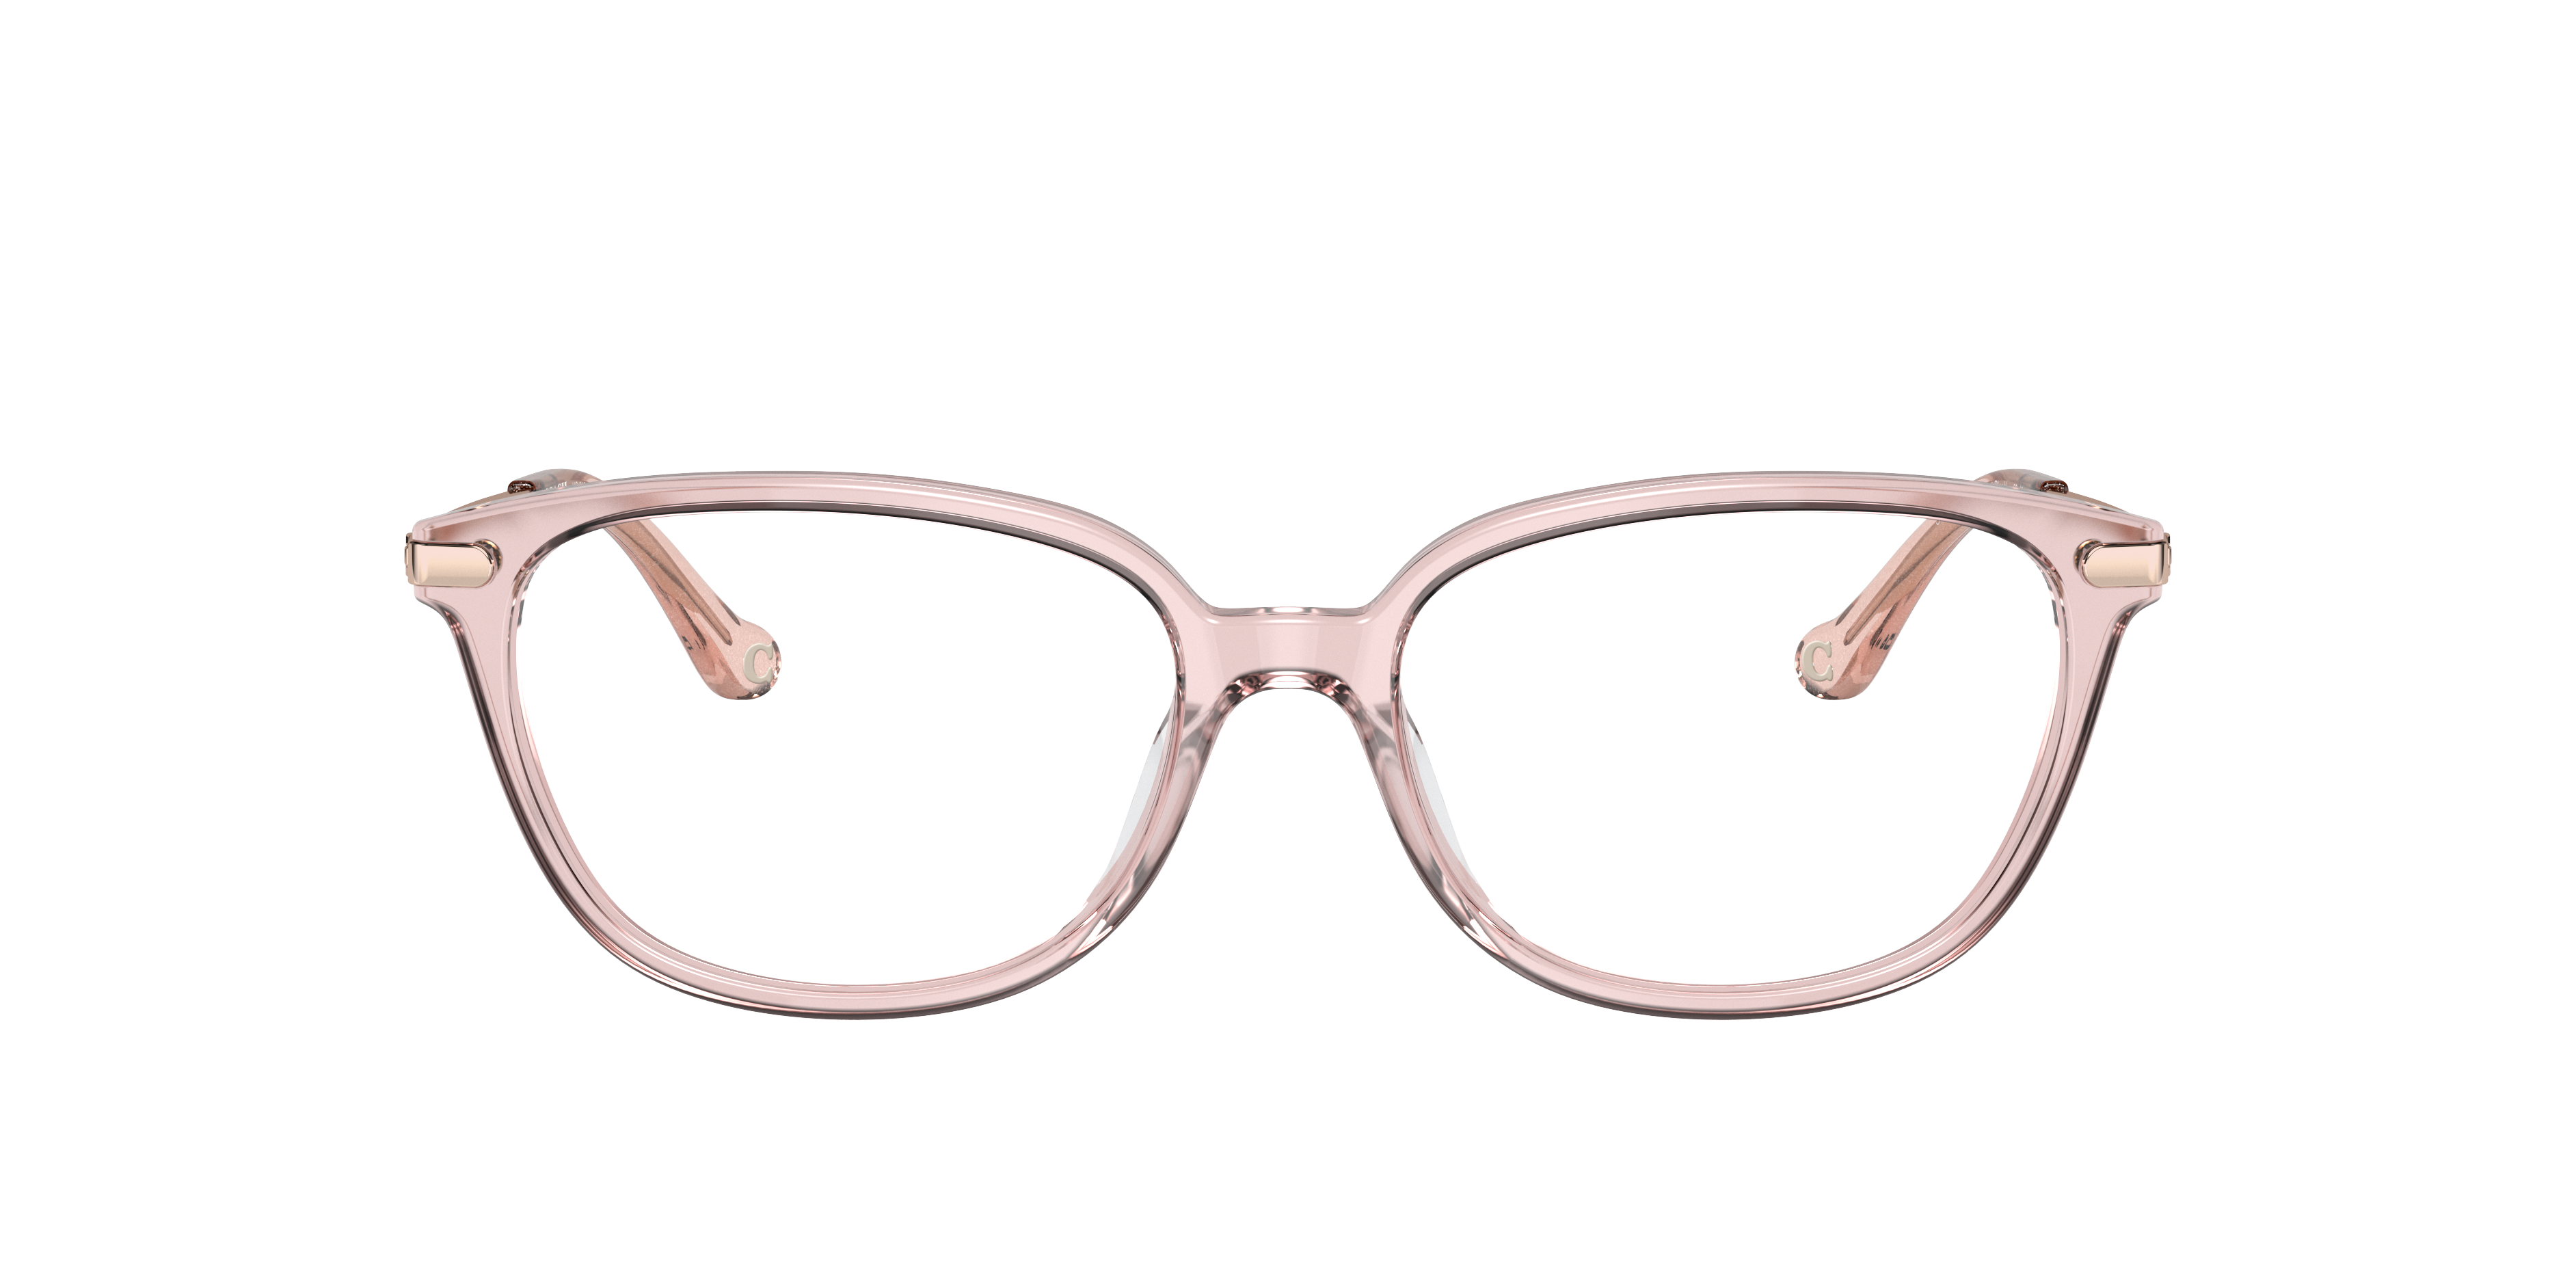 Espejuelos y gafas de sol - Espejuelos recetados | LensCrafters